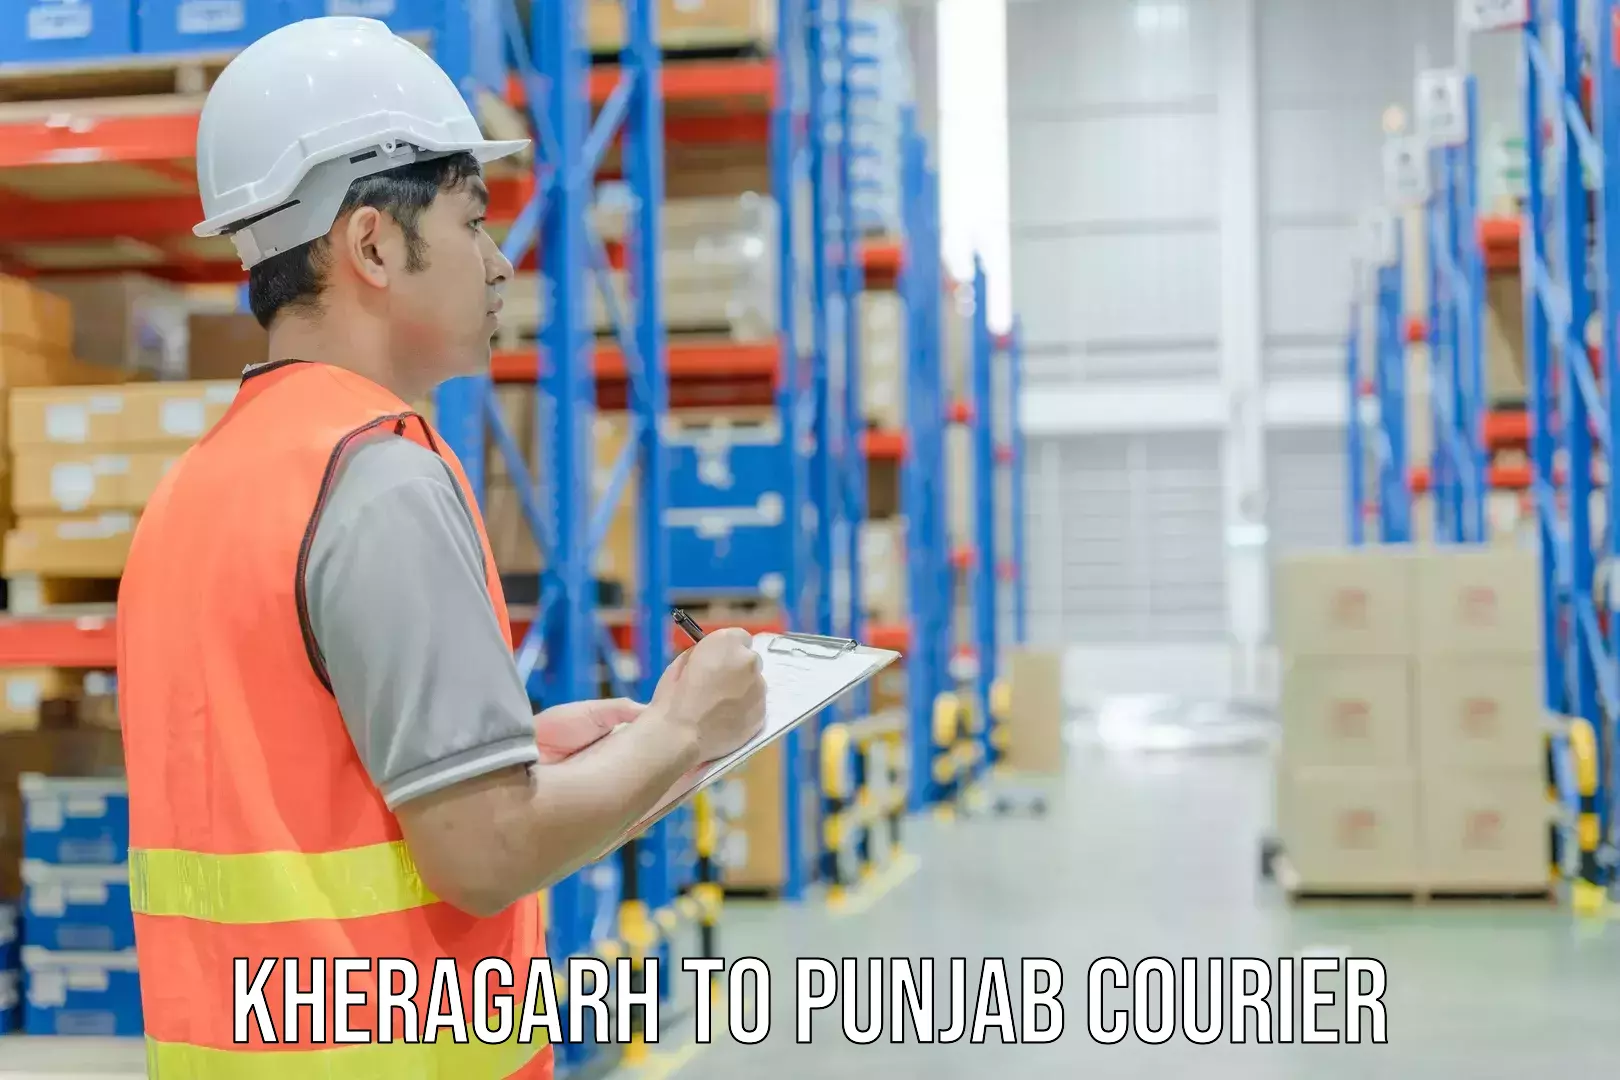 Scheduled delivery Kheragarh to Phillaur